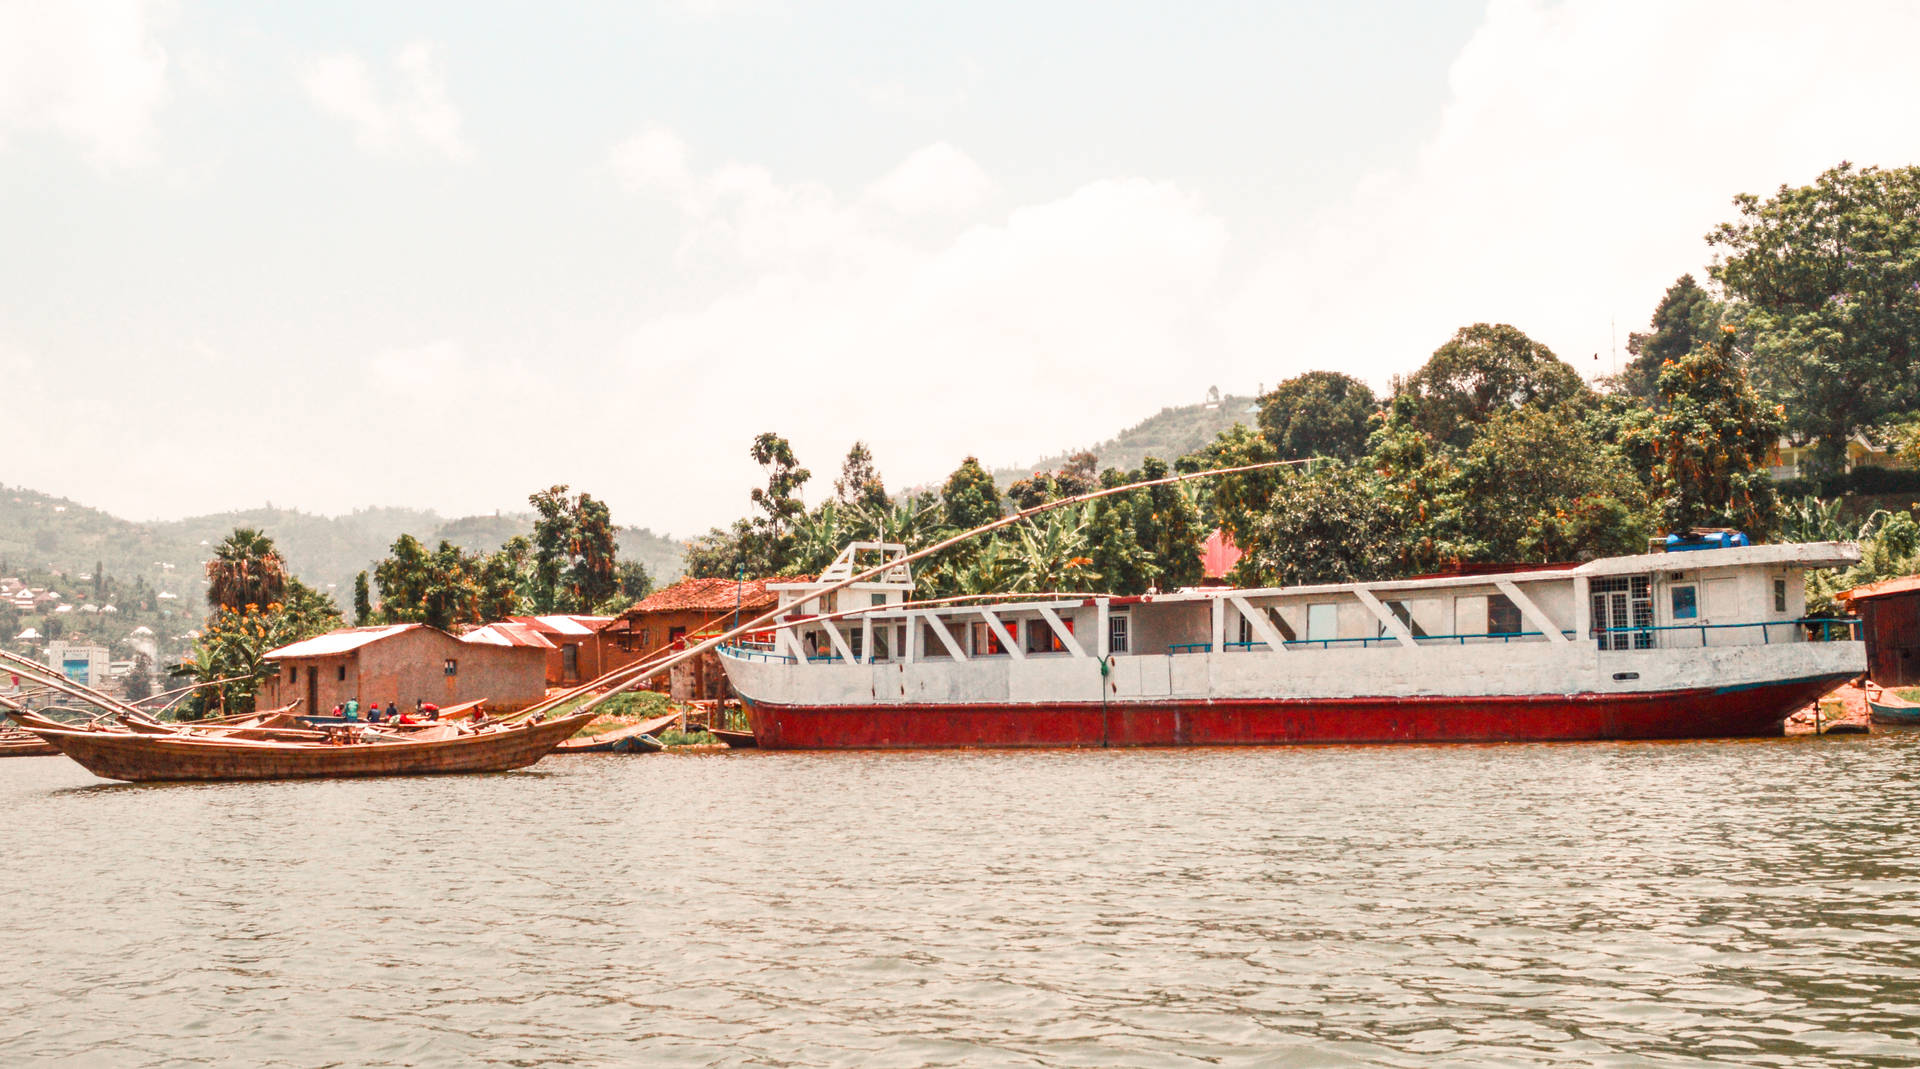 Rwanda Boats In Water Background